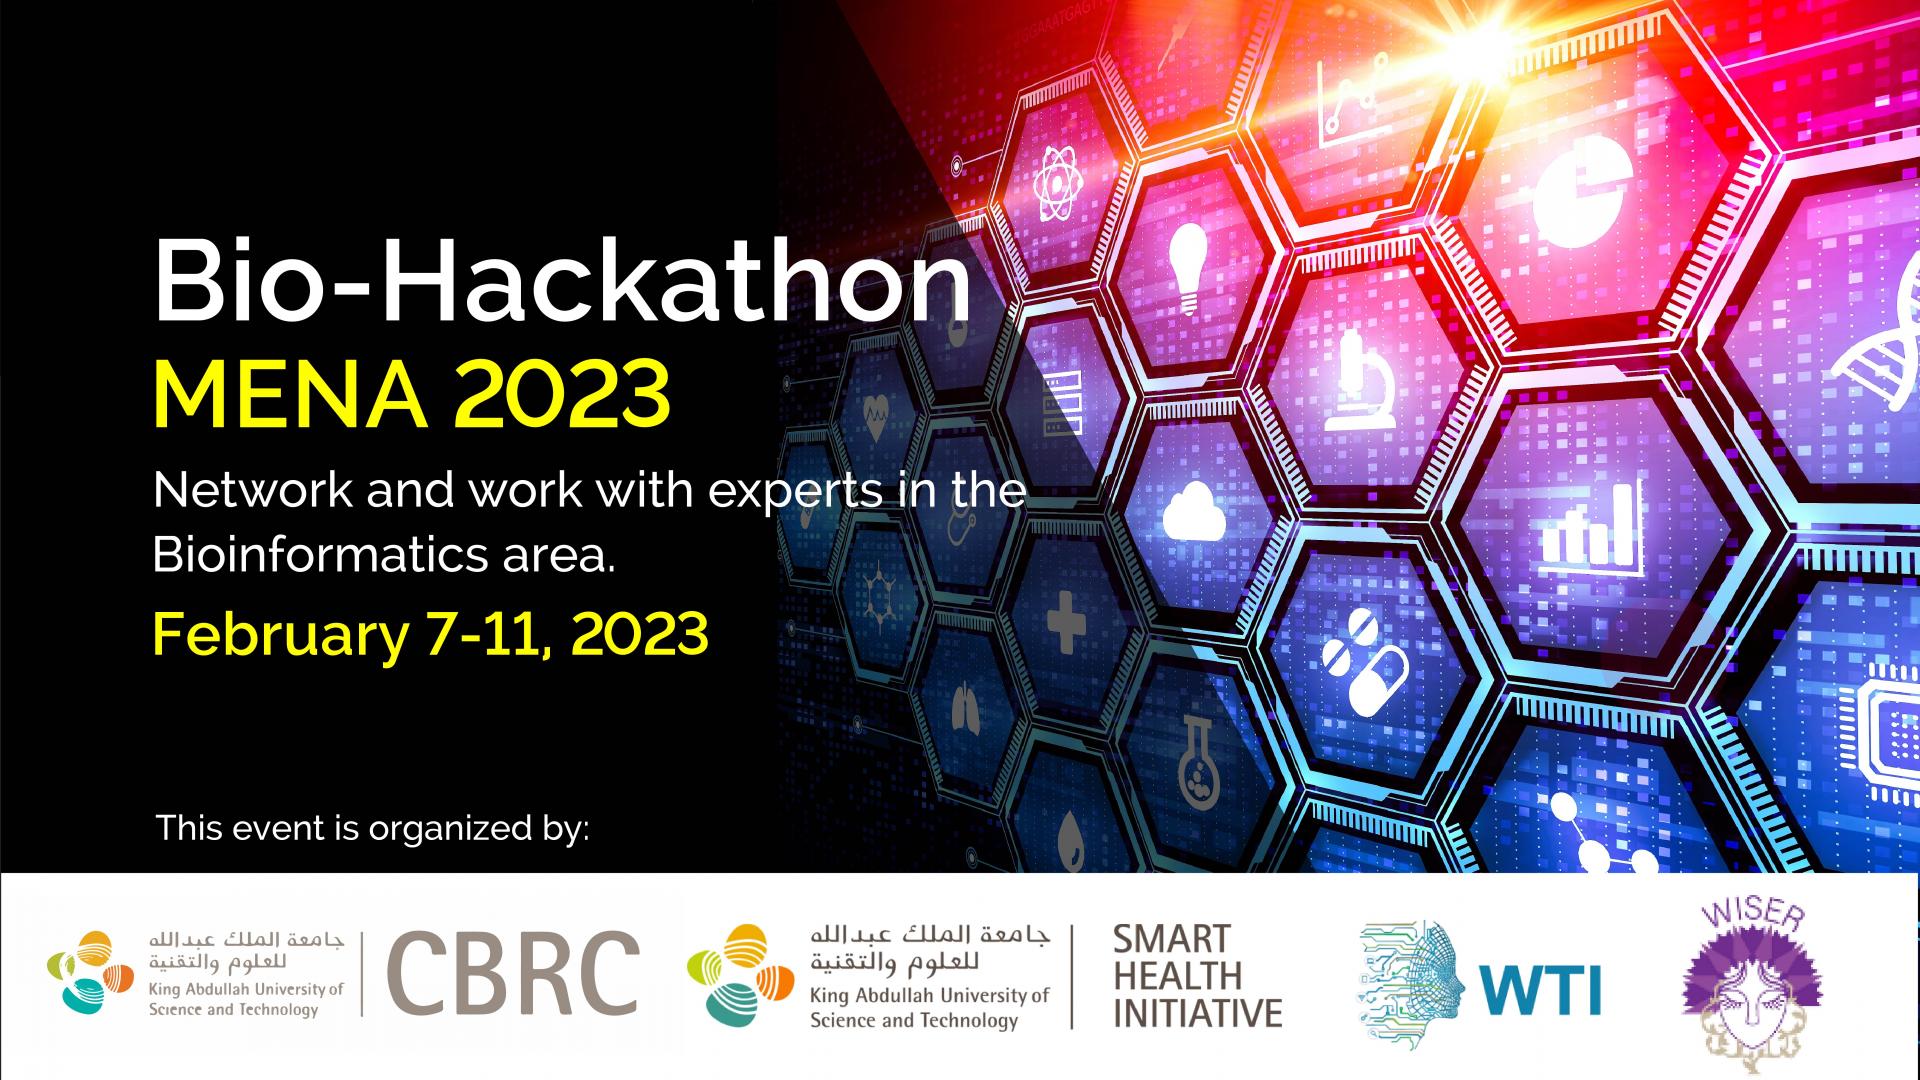 Bio-Hackathon MENA 2023